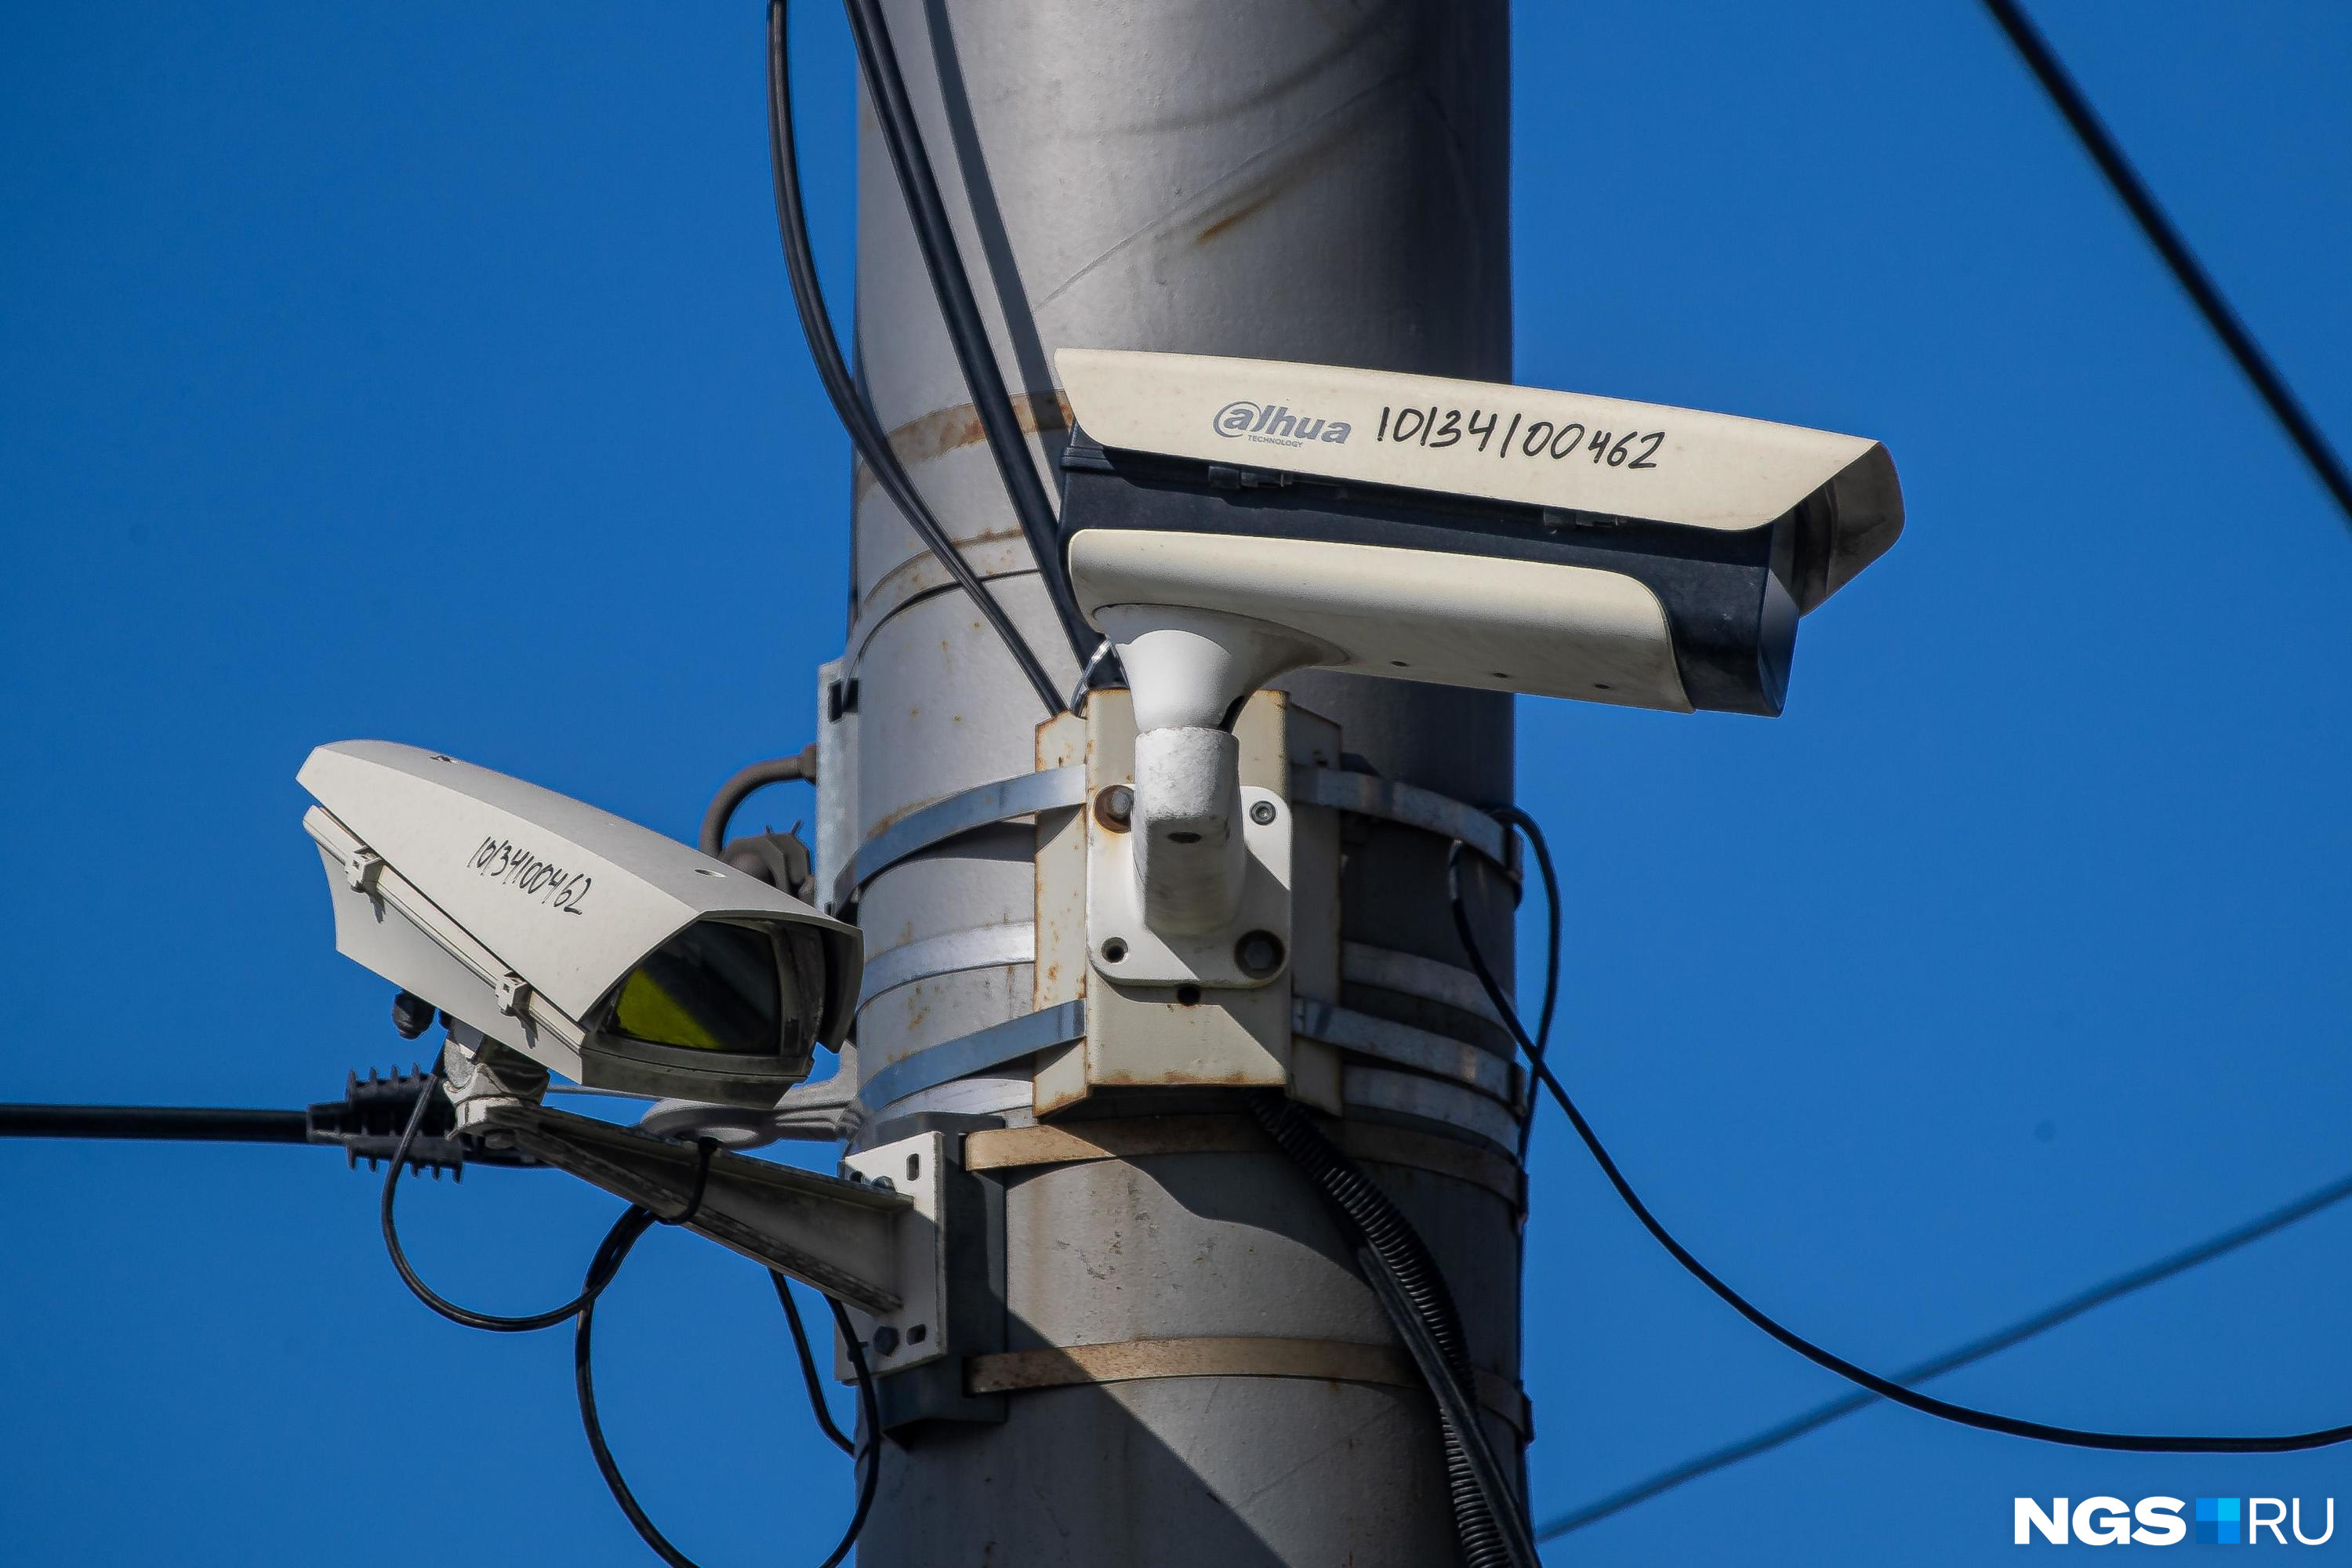 Камеры контроля ПДД продолжают работать в Чите после истечения договора их обслуживания